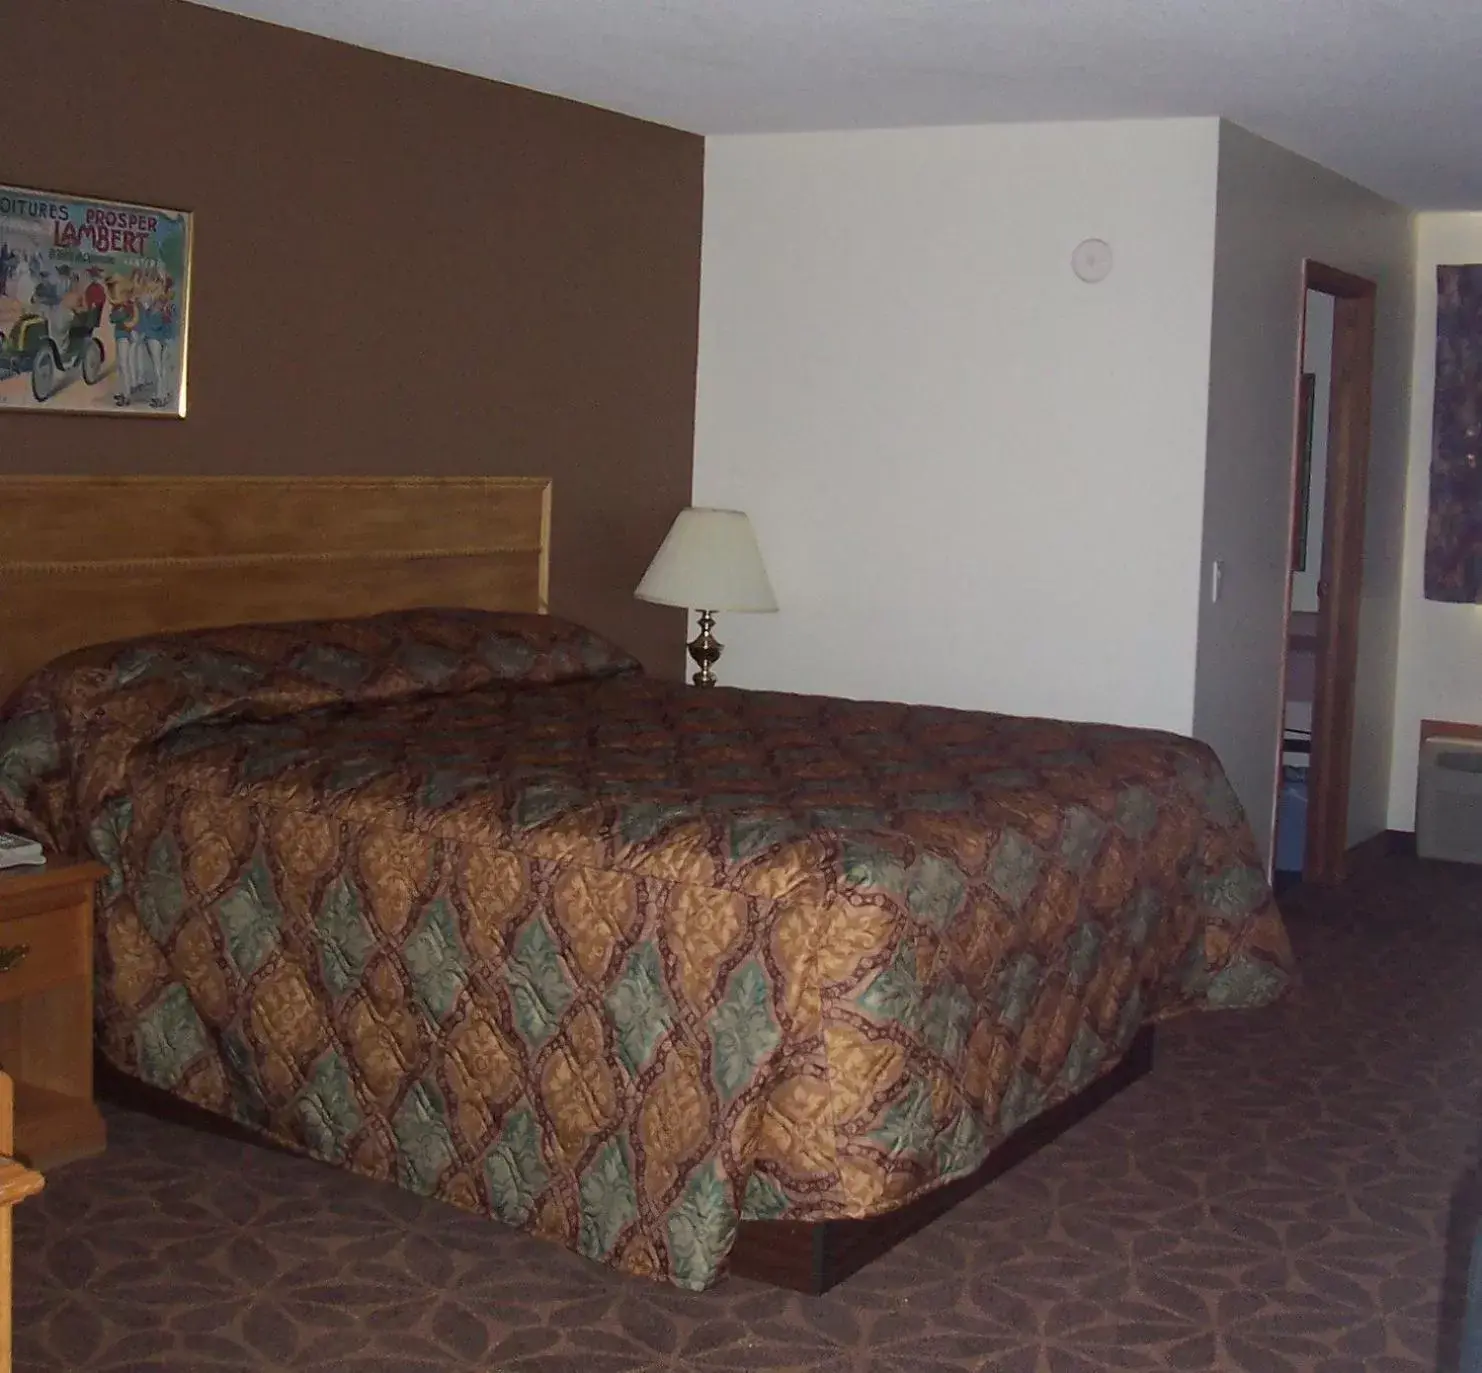 Bed in Model A Inn